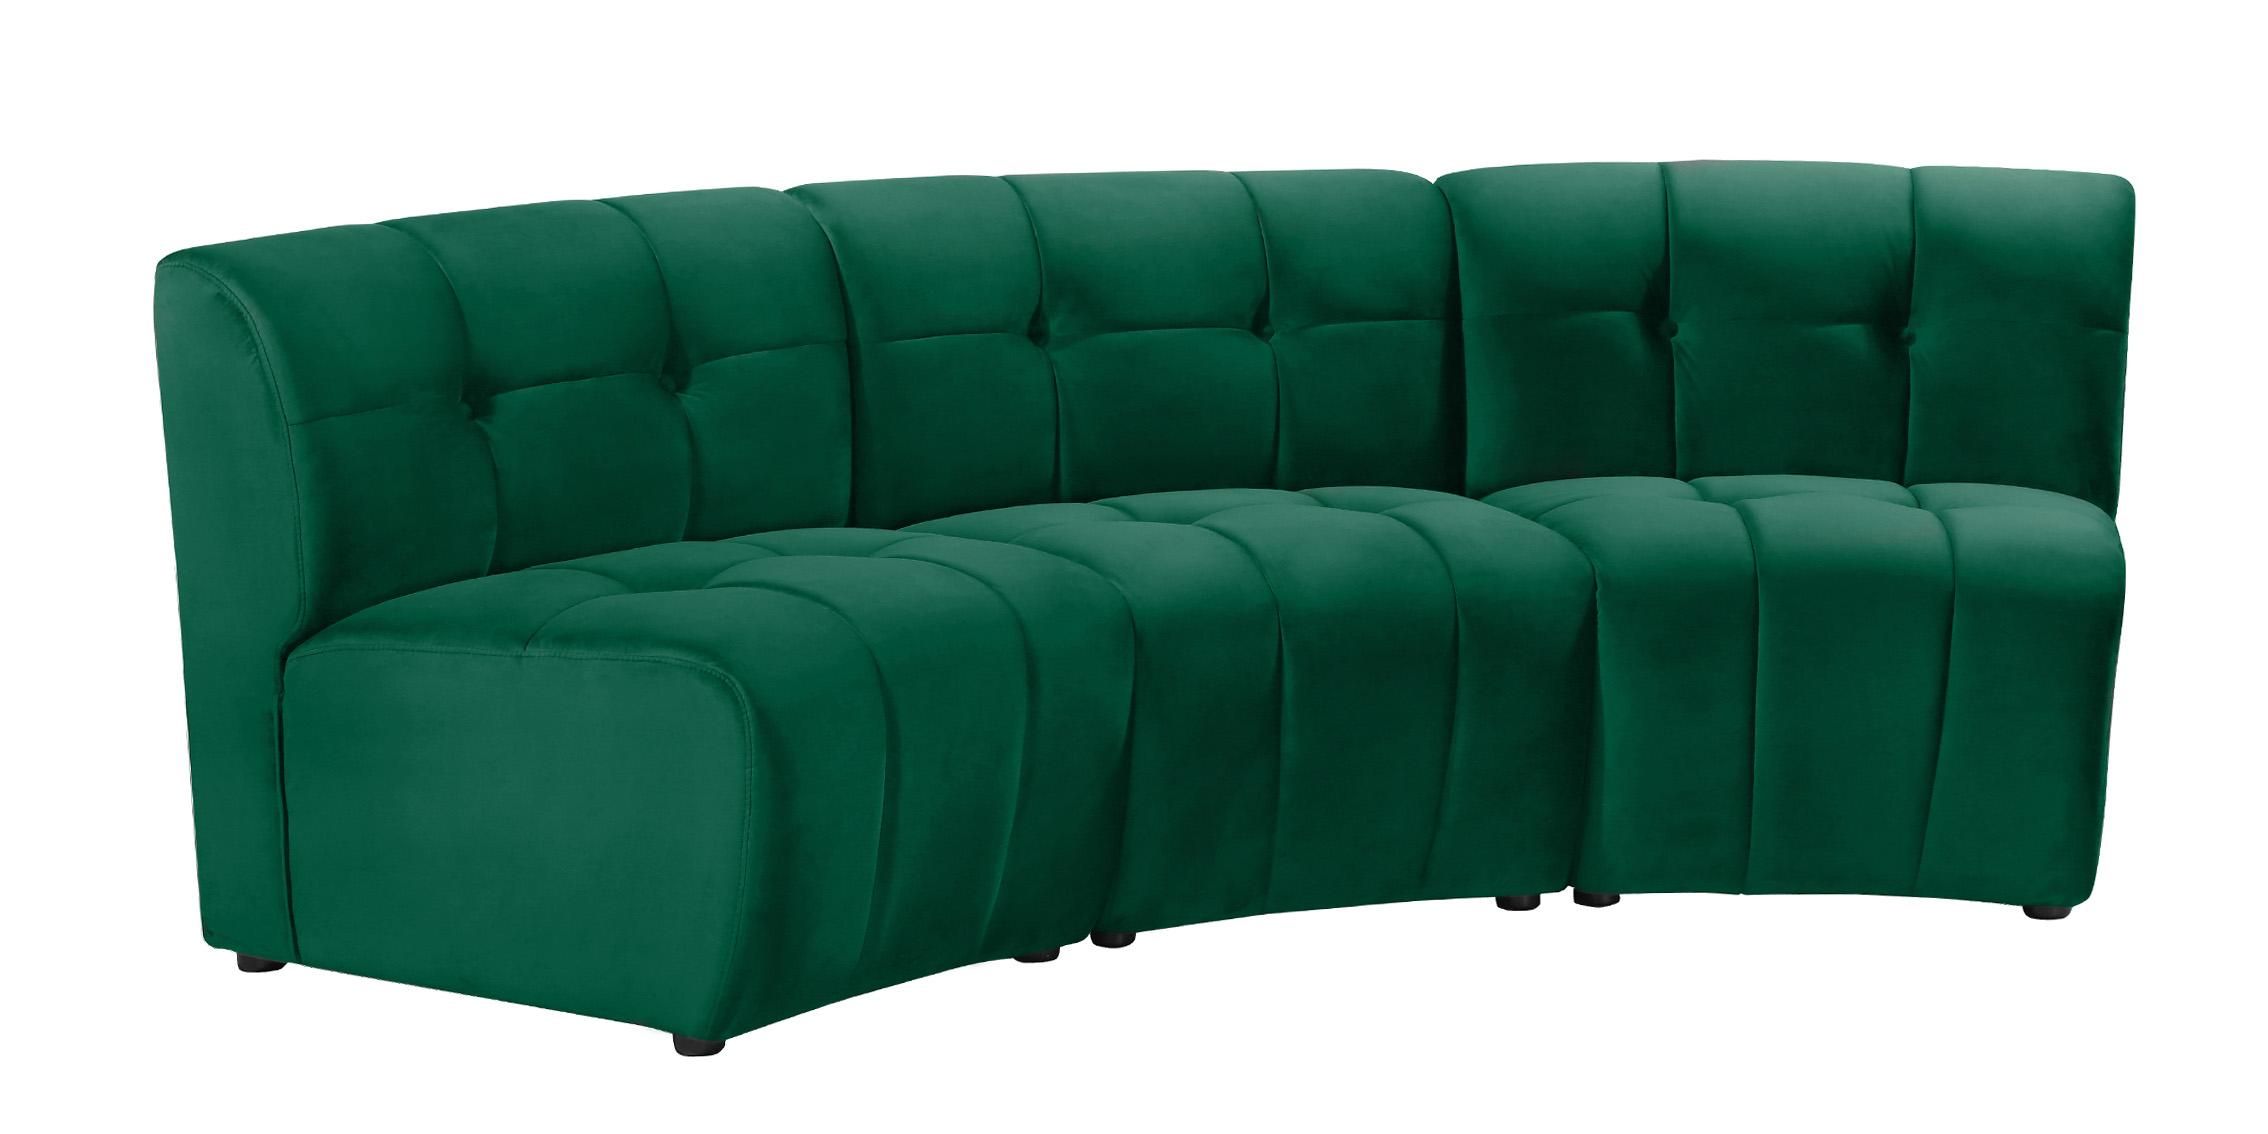 Green Velvet Modular Sectional Sofa Limitless 645green 3pc Meridian Modern  – Buy Online On Ny Furniture Outlet With Green Velvet Modular Sectionals (Photo 15 of 15)